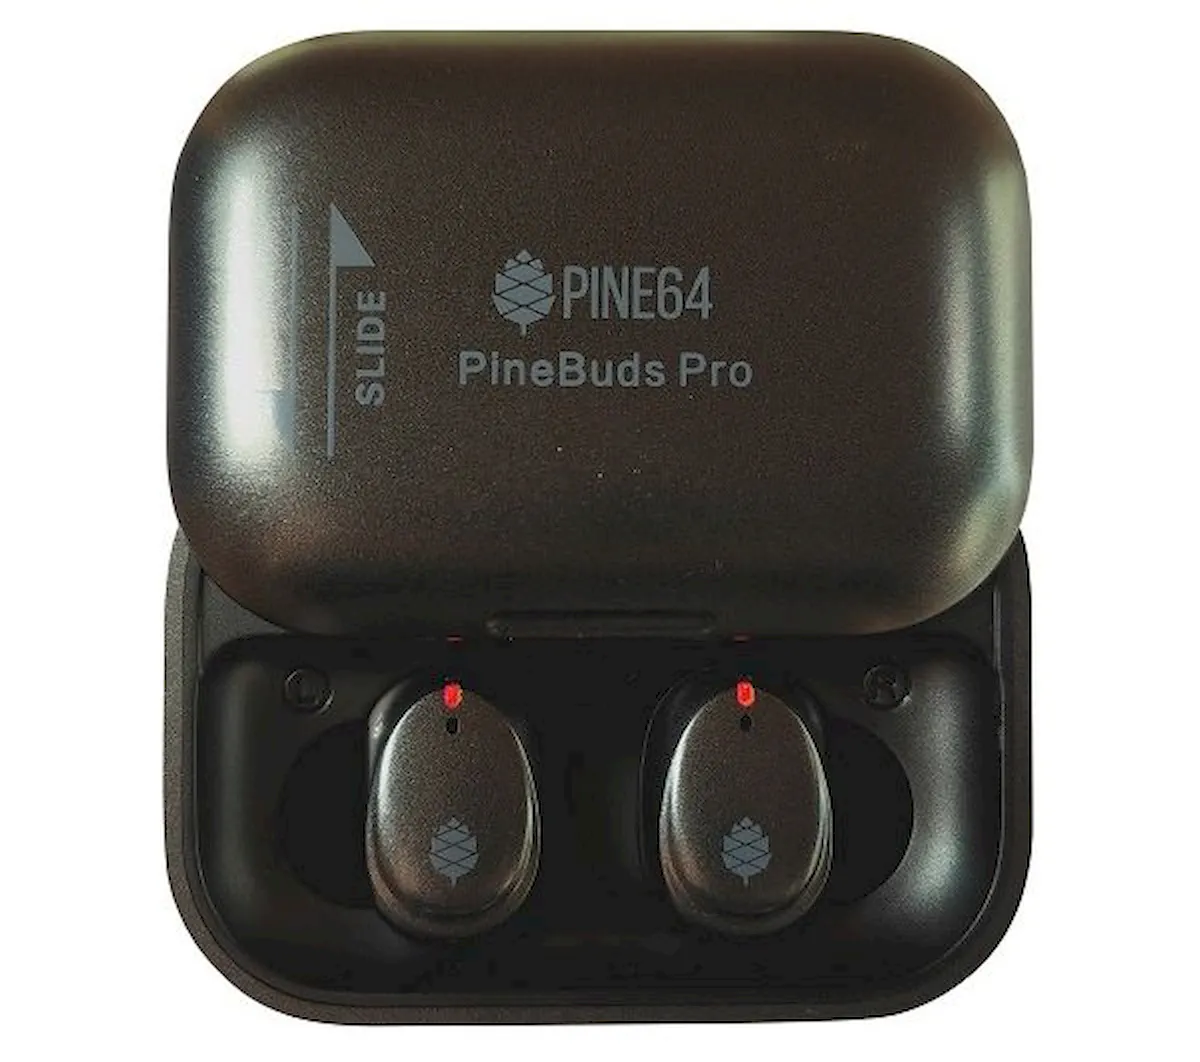 PineBuds Pro agora estão disponíveis por 70 dólares